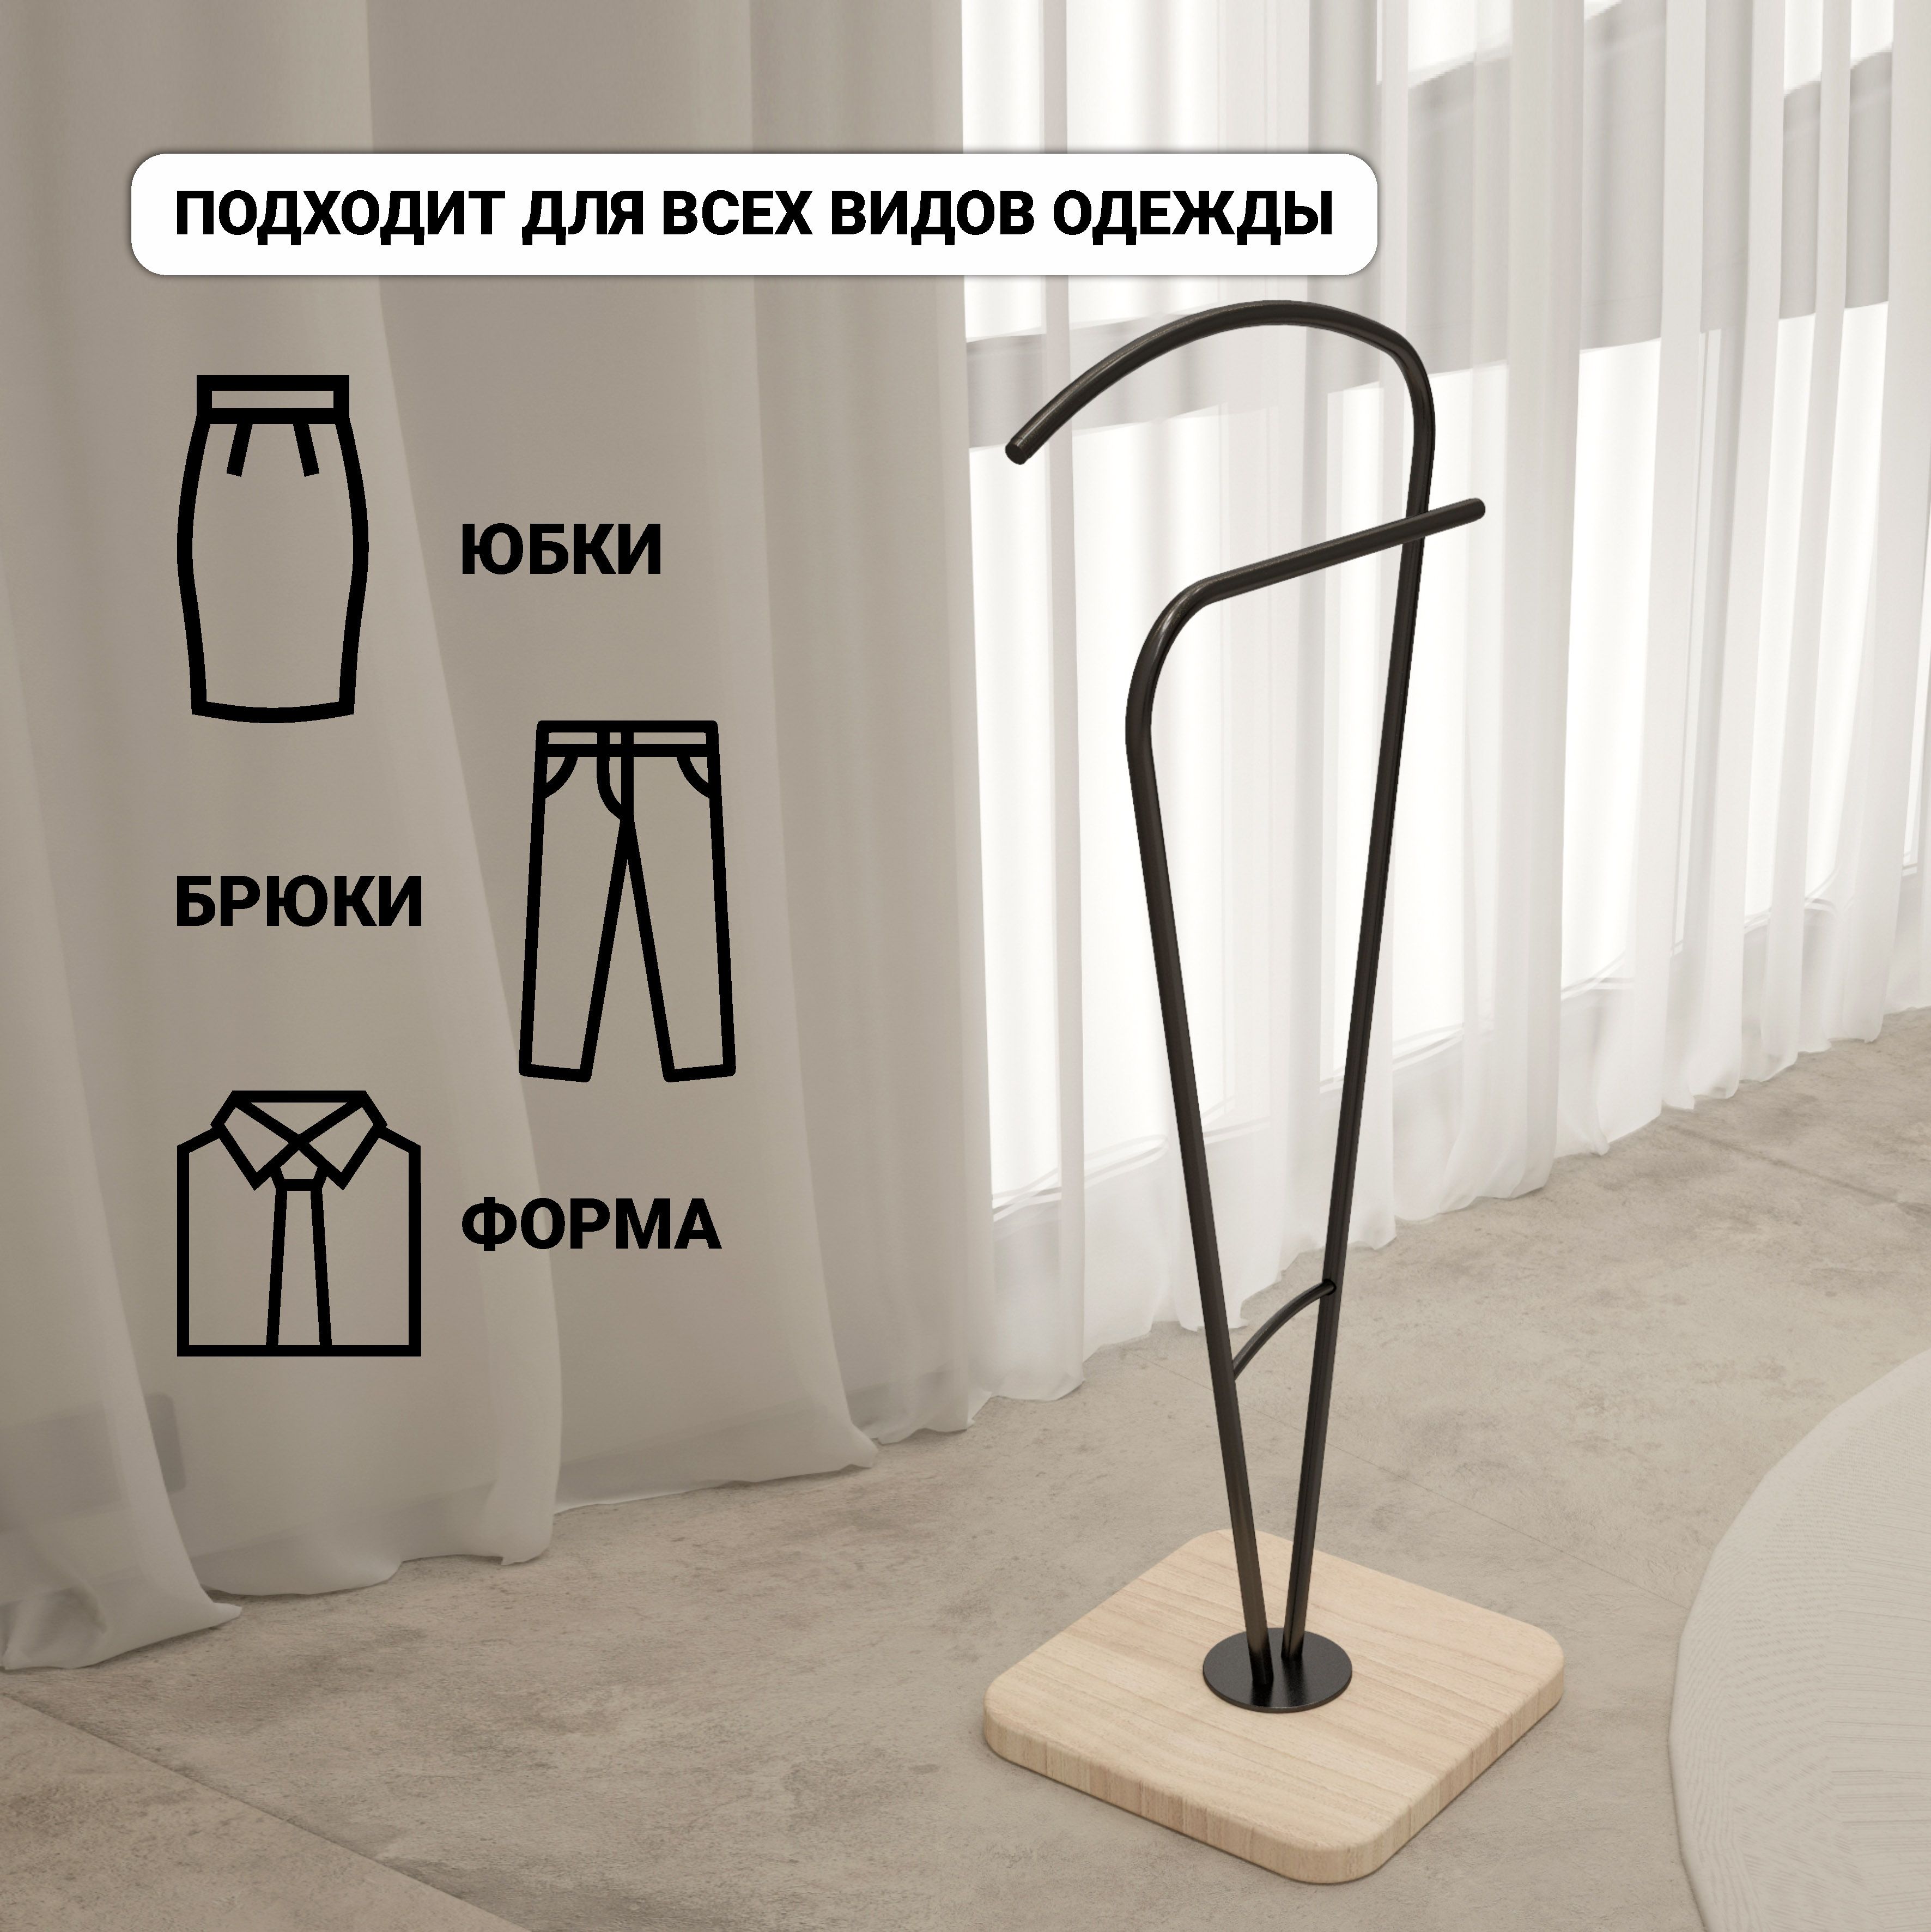 Вертикальная вешалка для отпаривания одежды